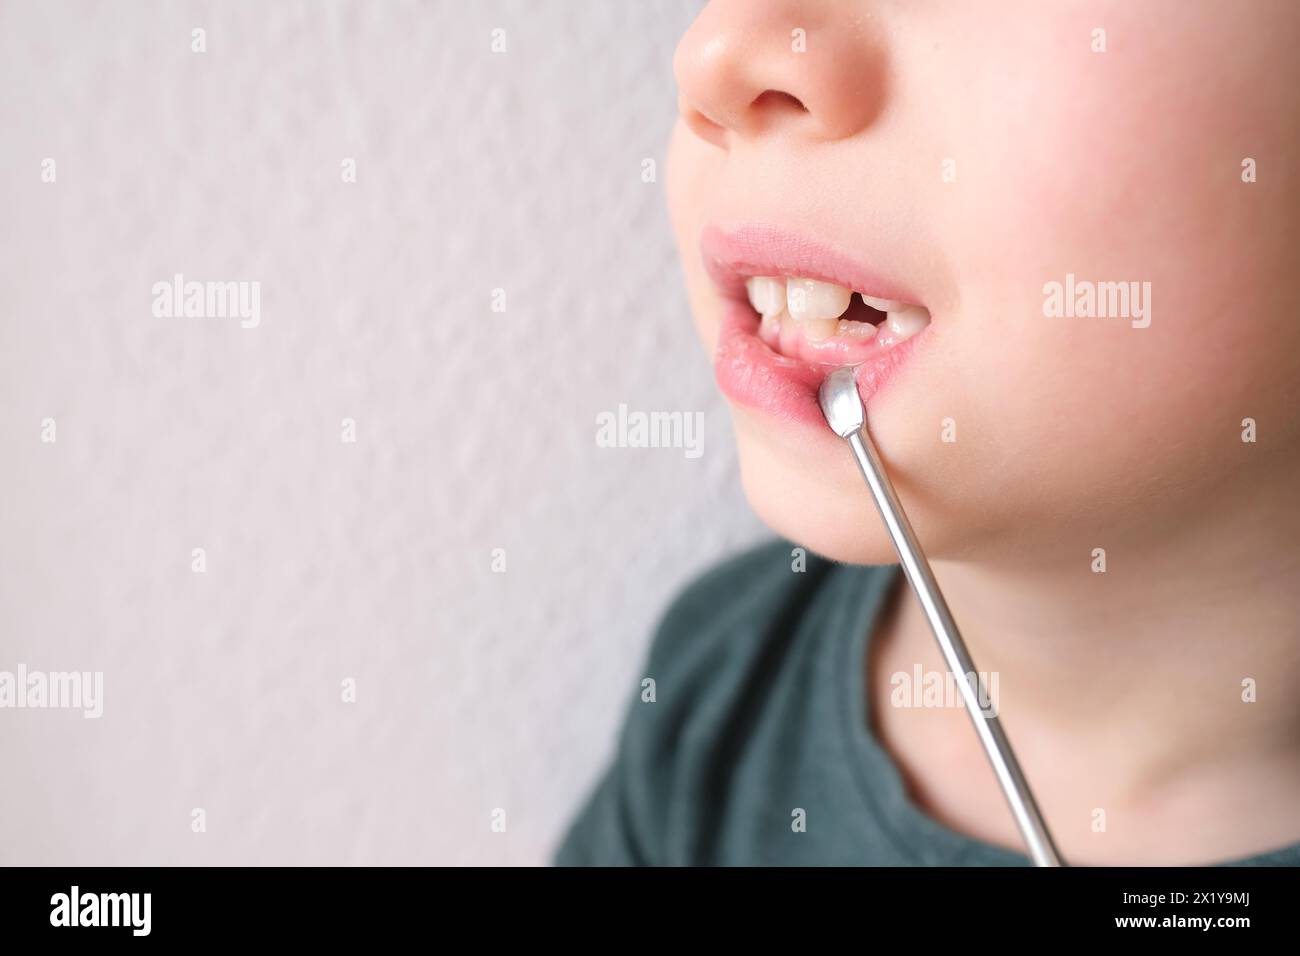 Kleinkind, Kind 7-8 Jahre alt sitzt mit offenem Mund, Zähne Nahaufnahme, Untersuchung des Backenzahns durch einen Zahnarzt, Konzept der Zahnbehandlung, Bisskontrolle Stockfoto